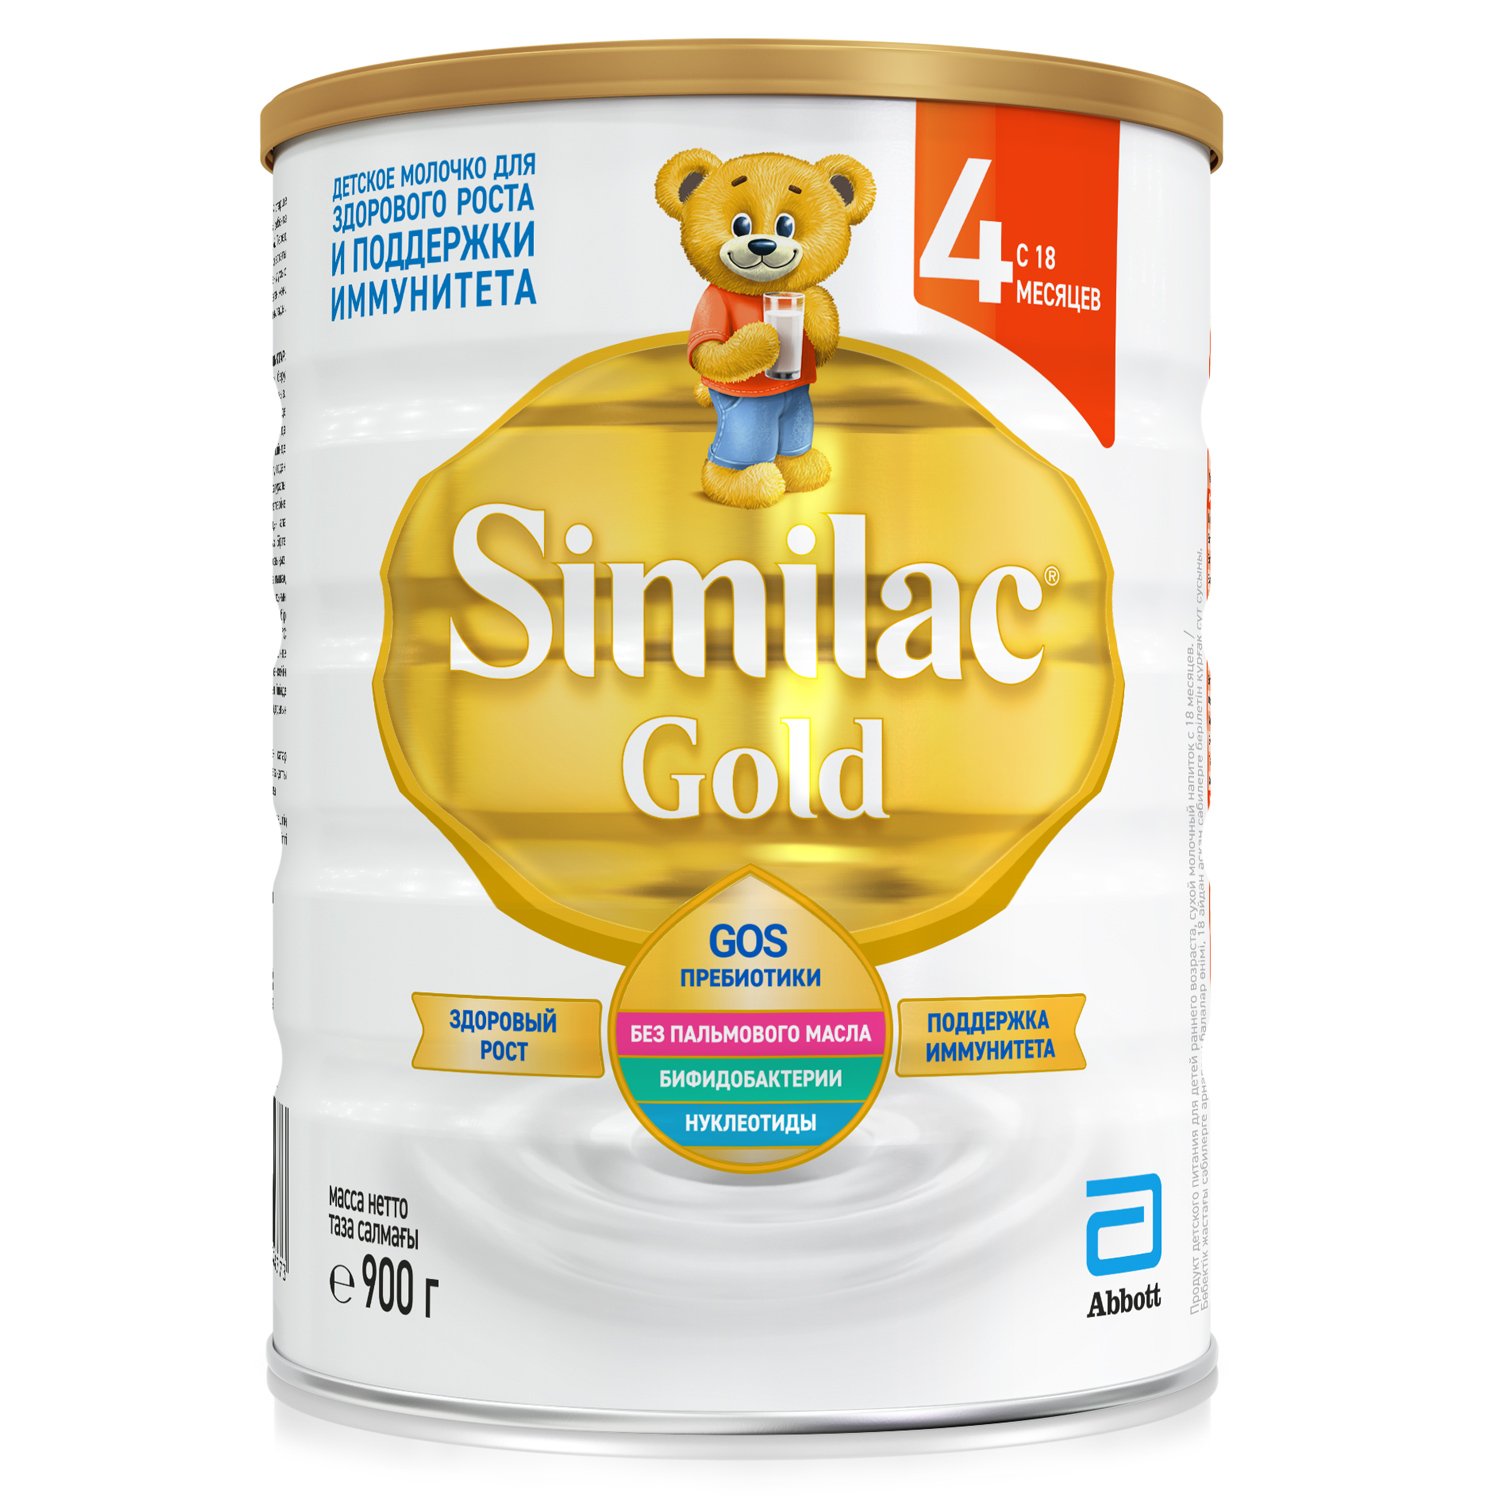 Суха молочна суміш Similac Gold 4, 900 г - фото 1